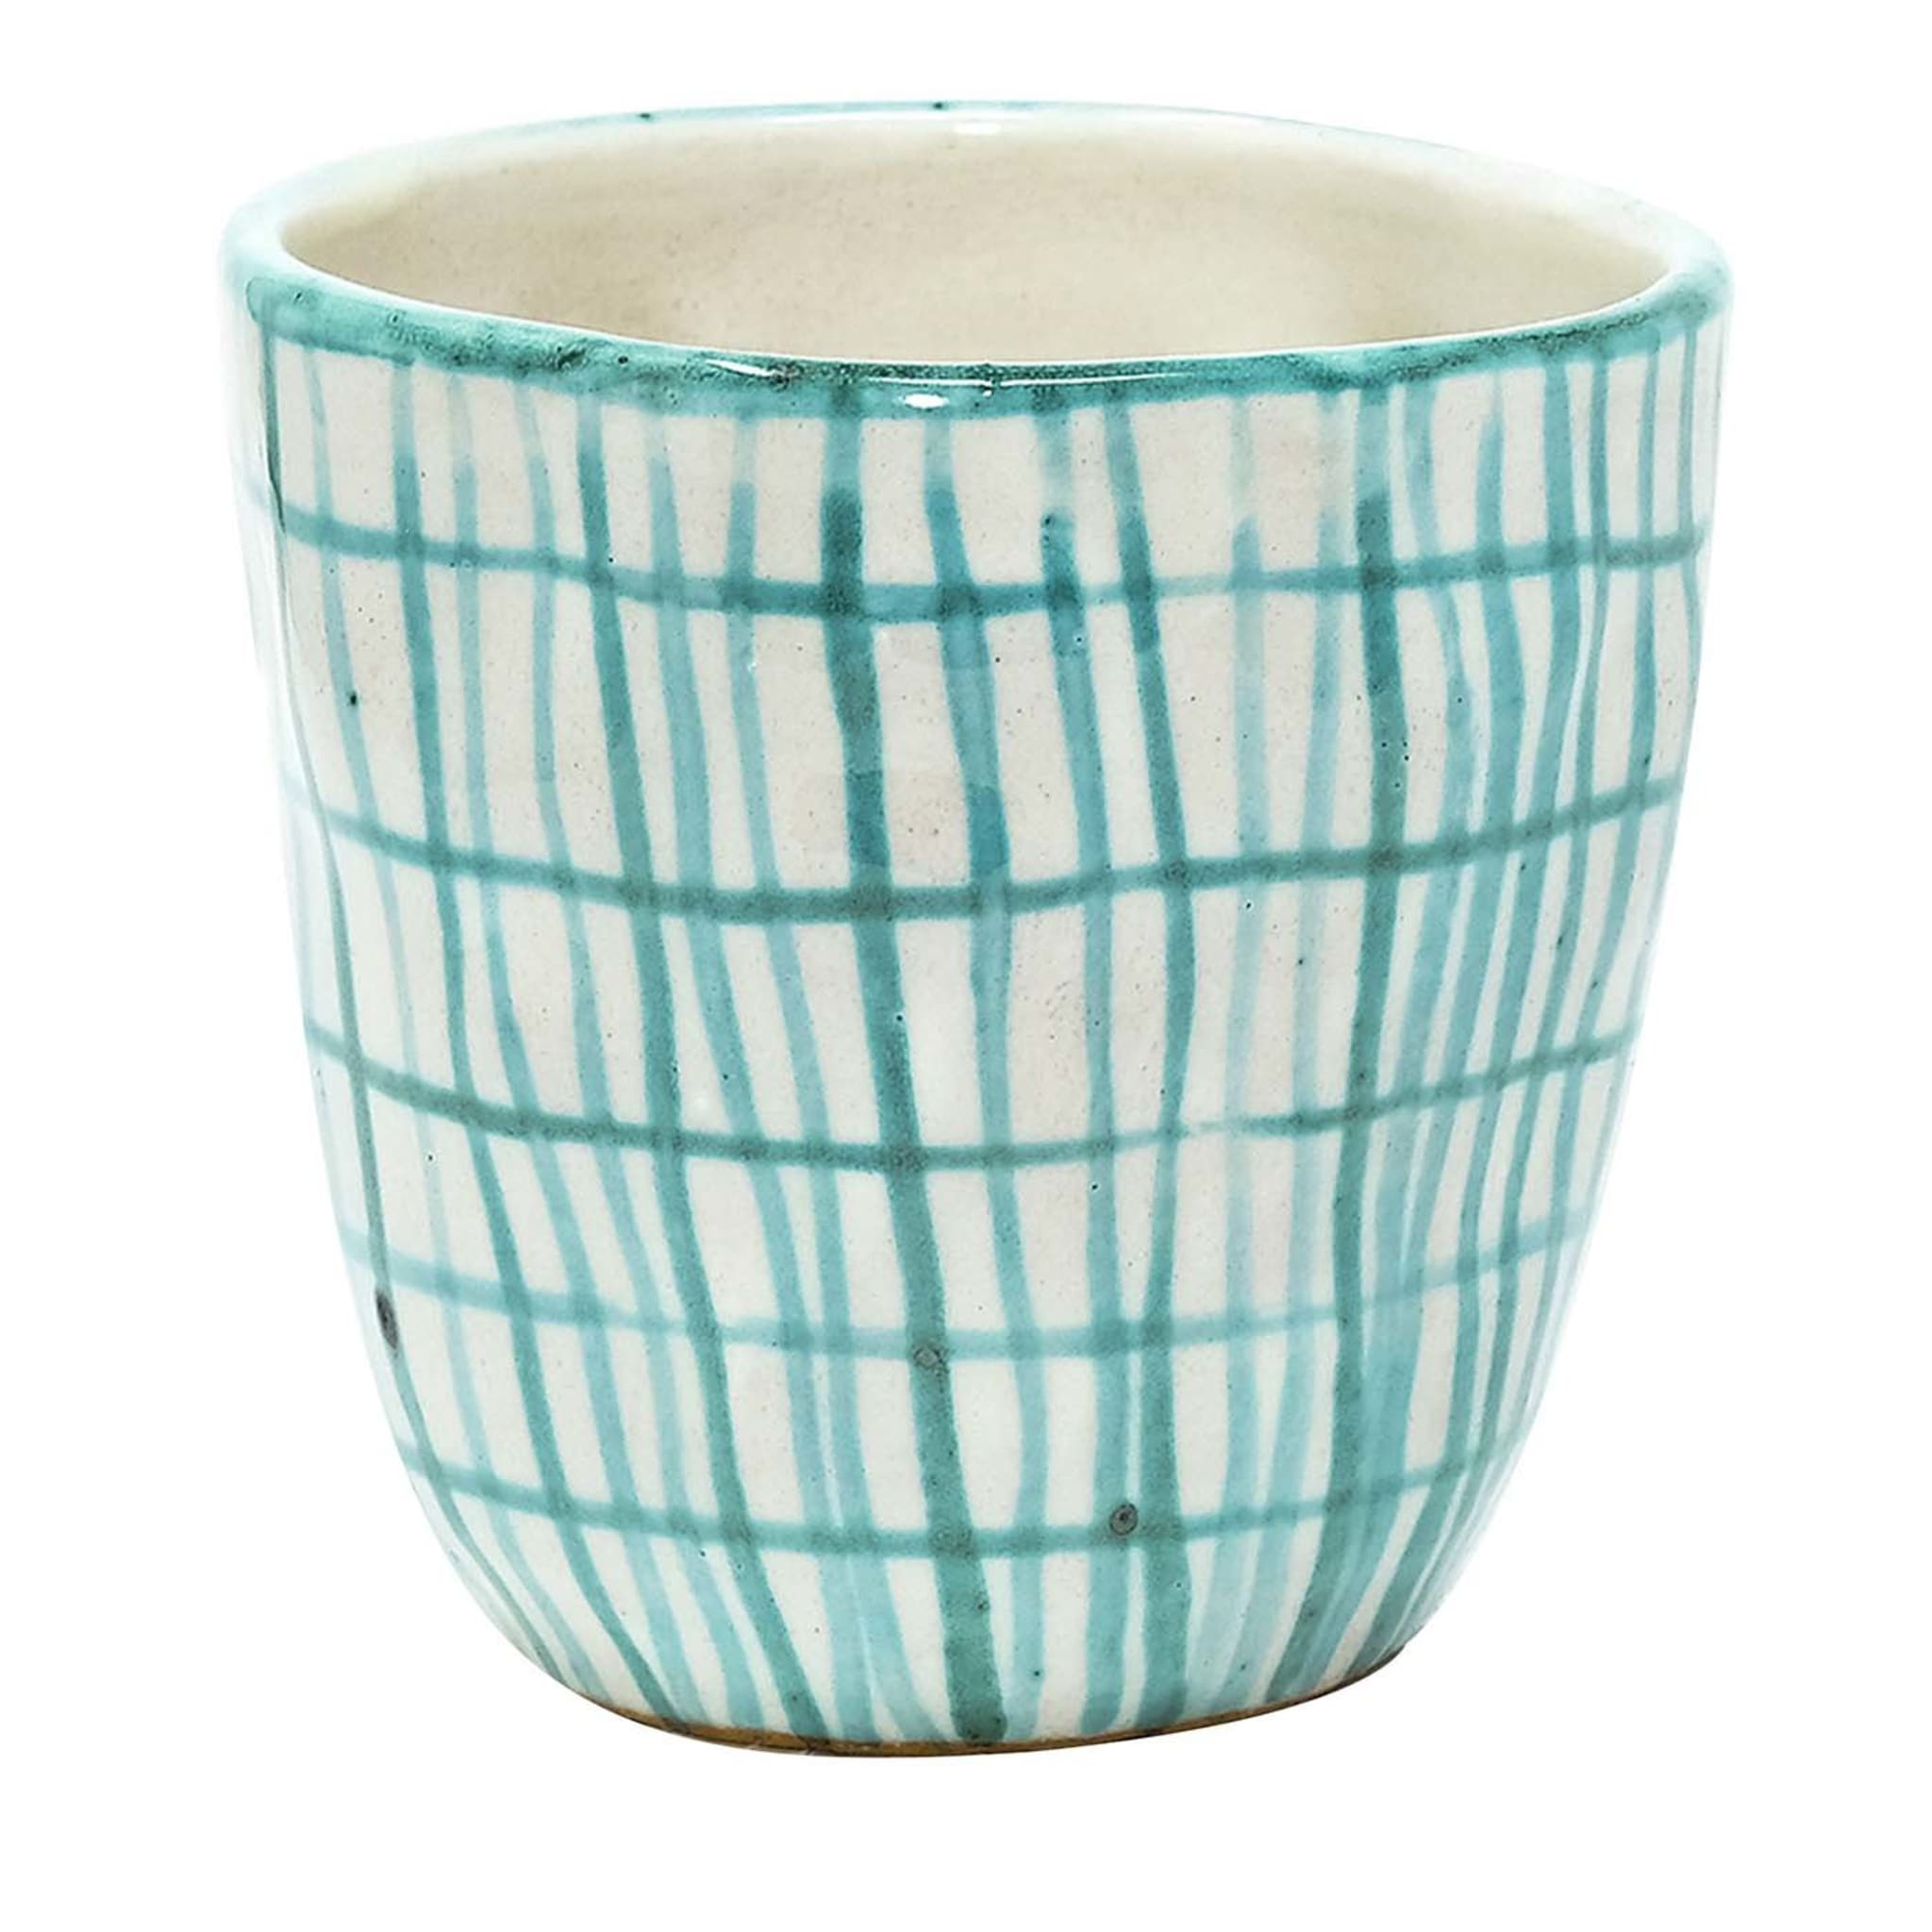 Set of 2 Crumpled Ceramic Cups with Aqua Checks - Main view